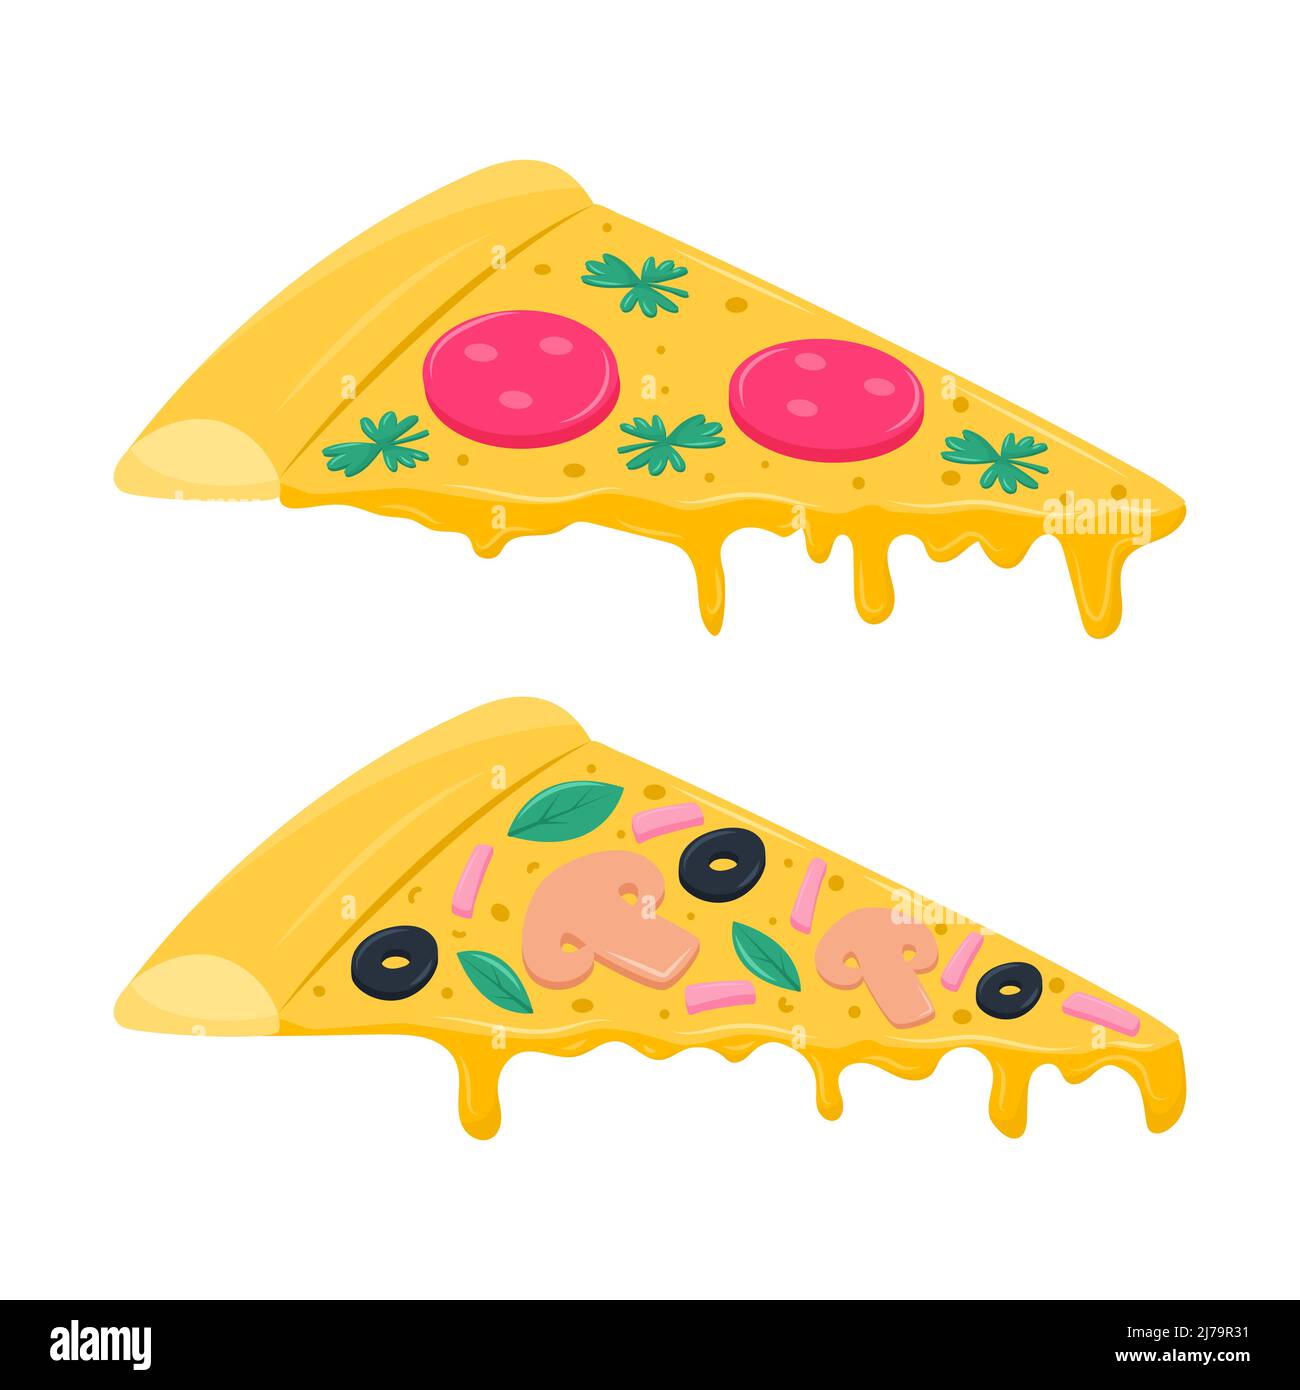 Zwei Scheiben Pizza mit Oliven, Petersilienblättern, Wurst und Champignons. Italienische Küche mit tropfendem geschmolzenem Käse. Vektorgrafik in einem flachen Wagen Stock Vektor